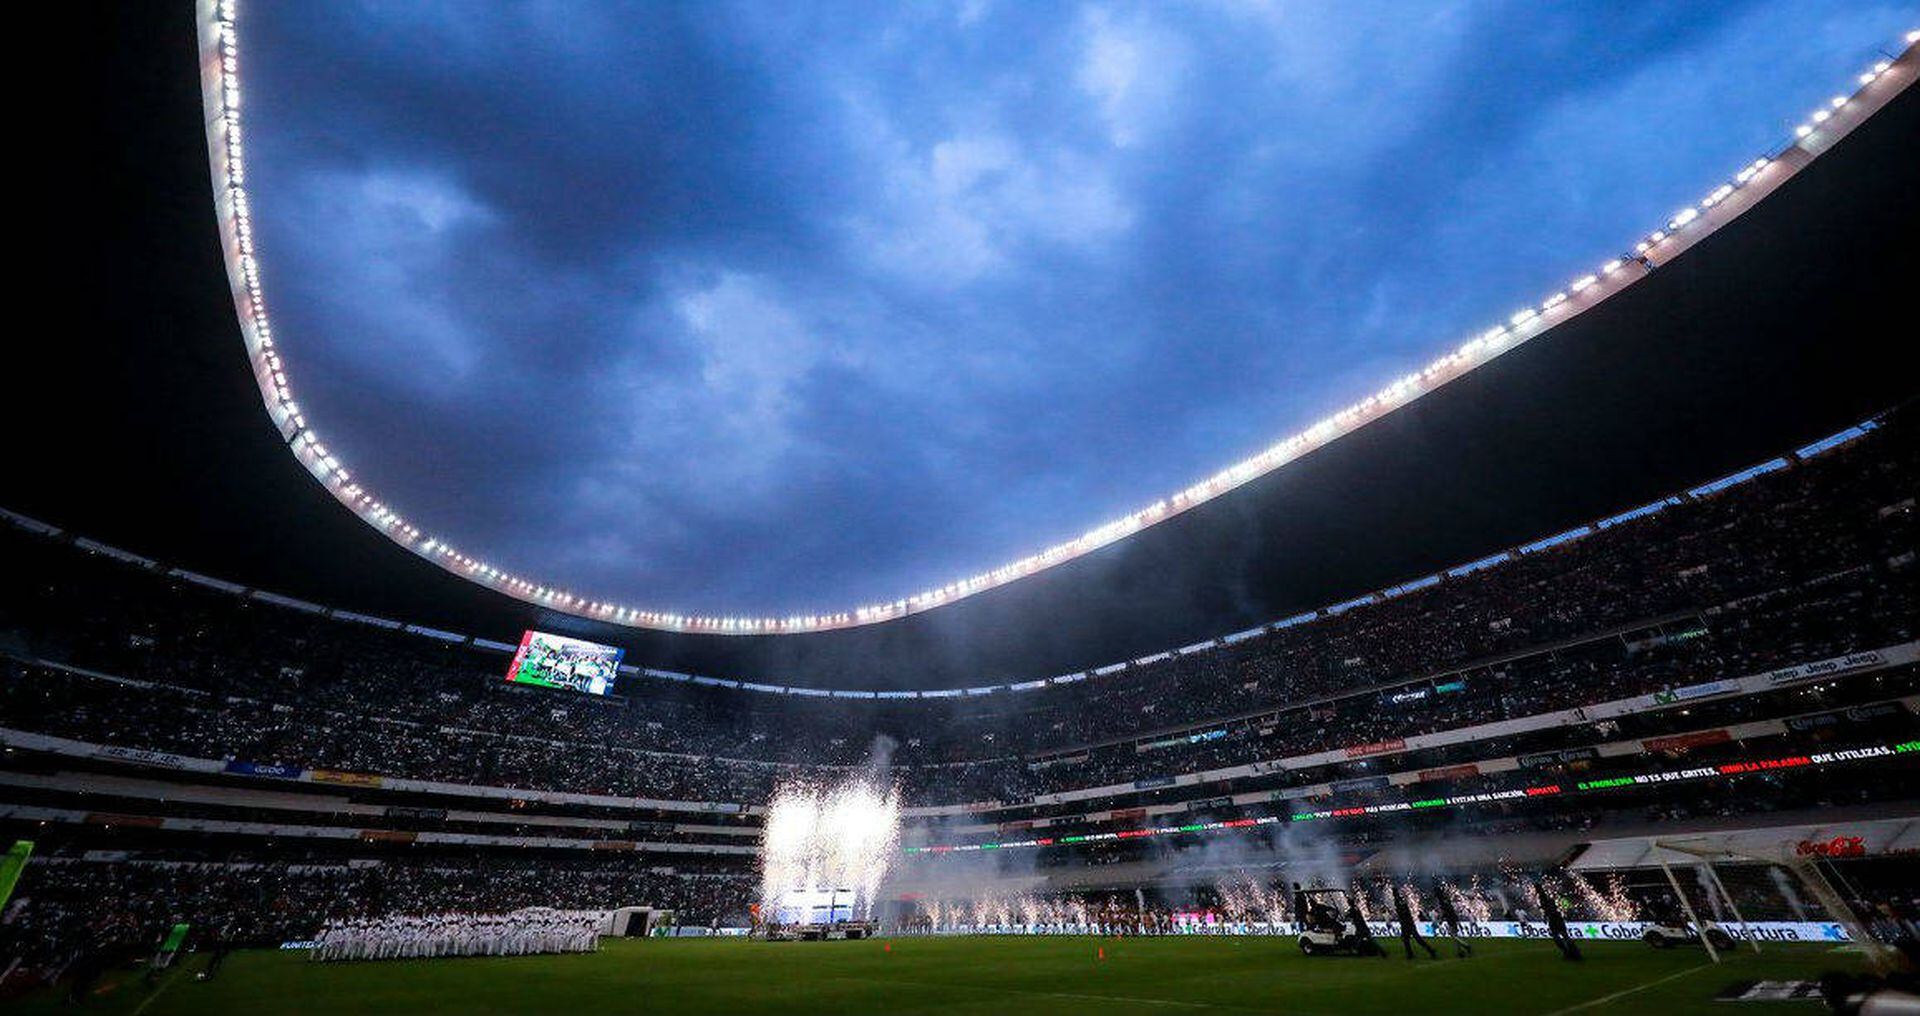 Saldo a favor de mexicanos contra asiáticos en mundial de clubes - Cancha  Poltica